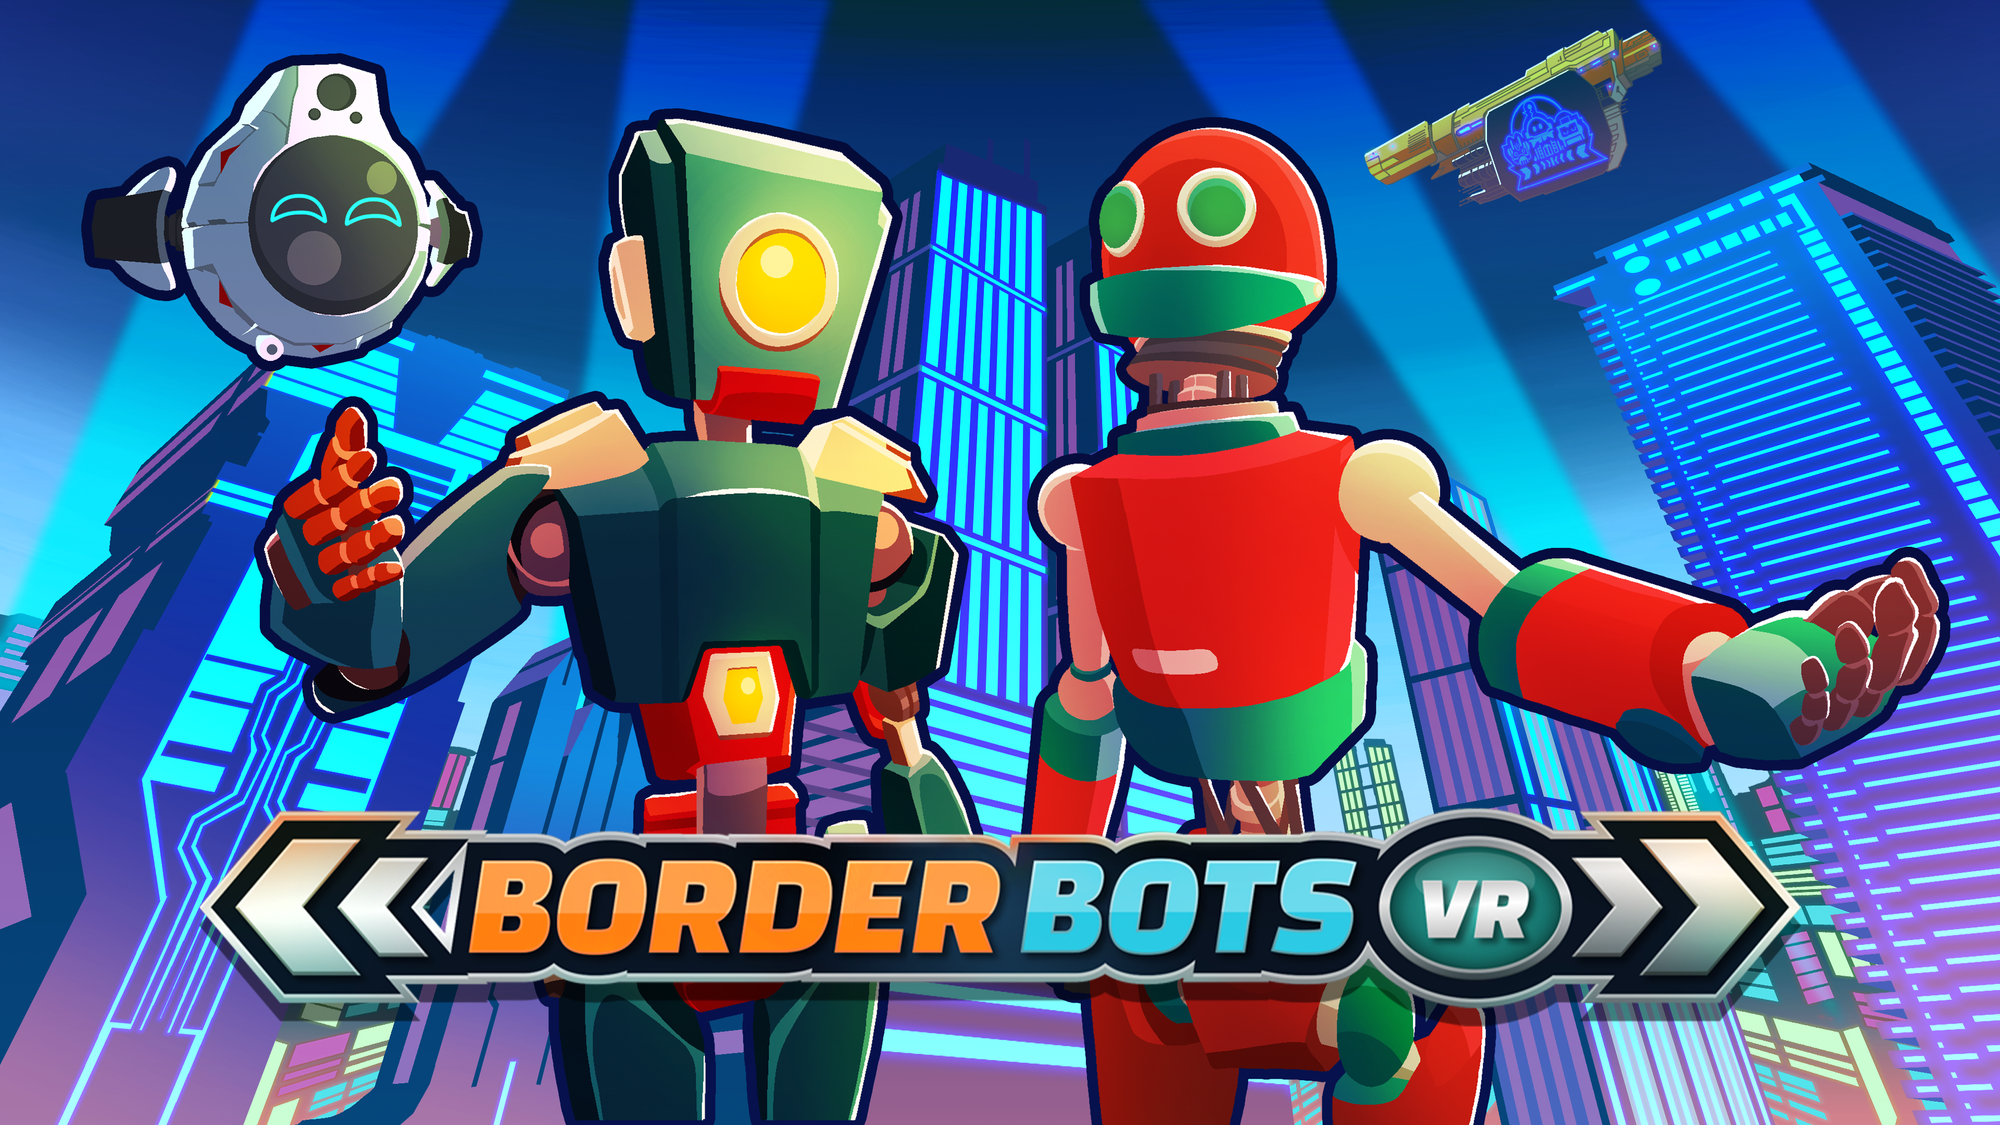 Podgląd Border Bots VR: czarujący, wciągający i gotowy do bliższej inspekcji